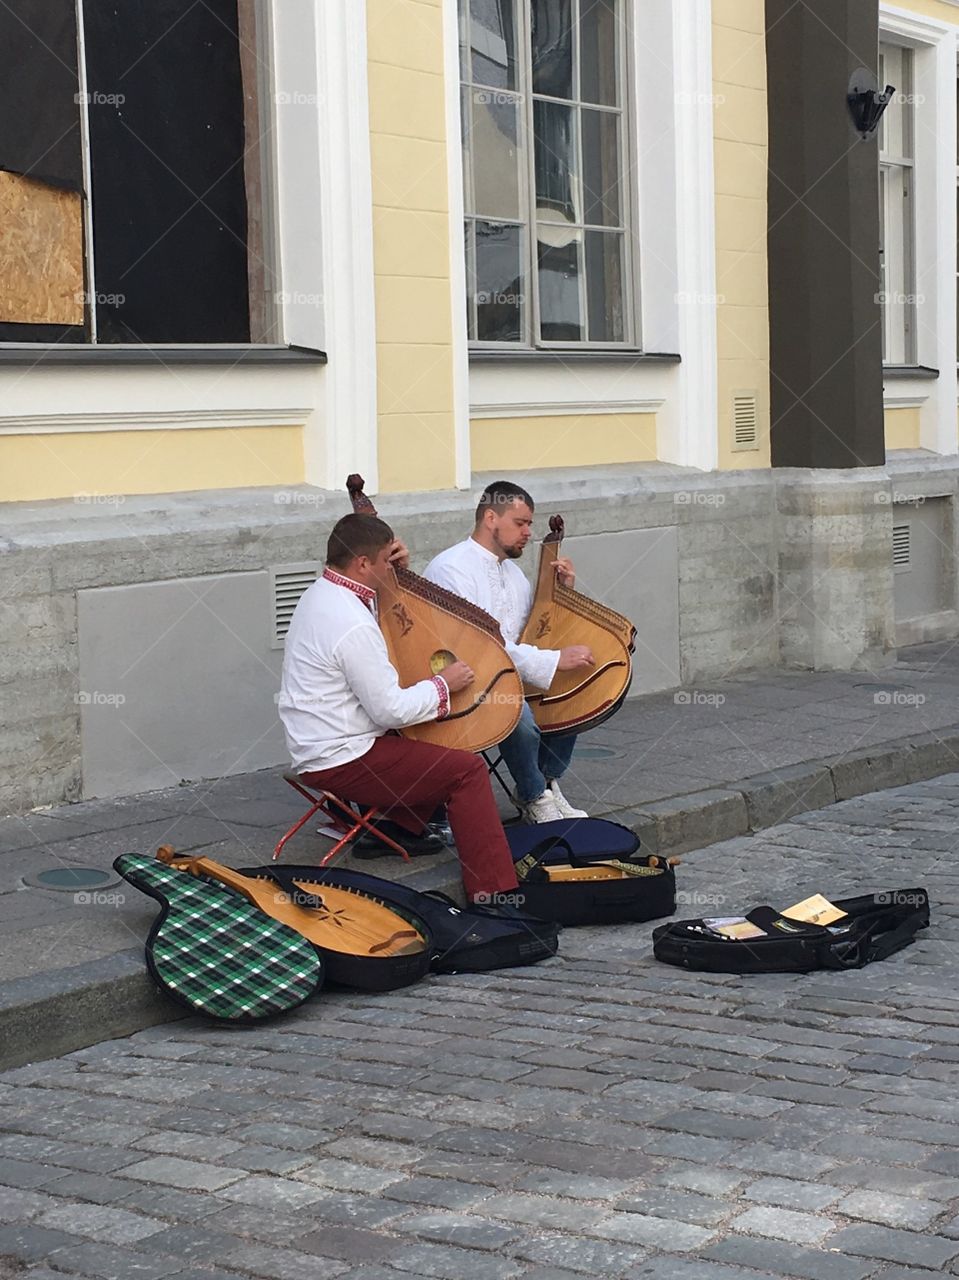 Tallinn musicians